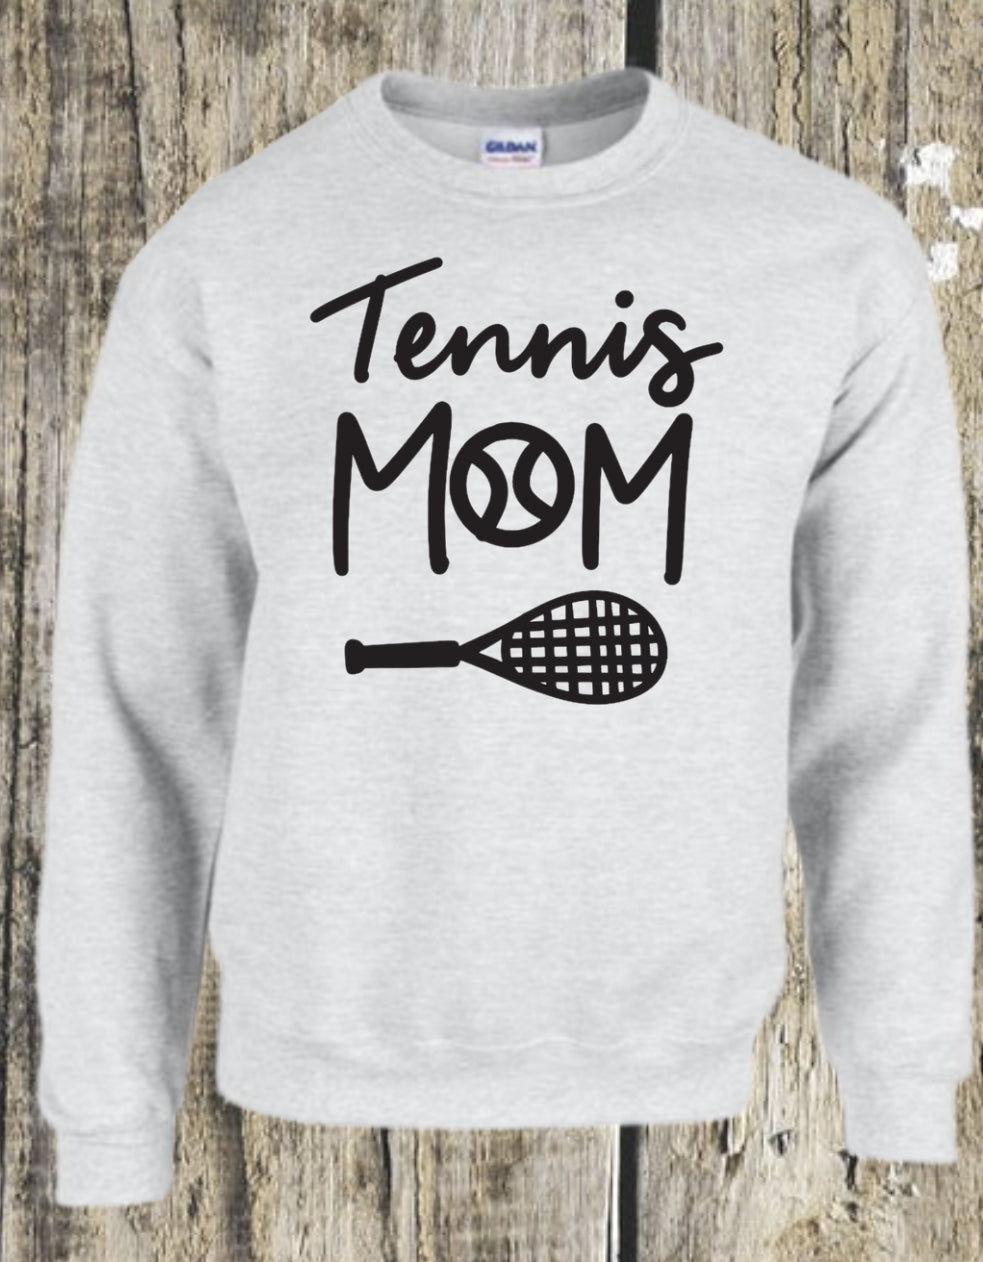 Tennis Mom (#3)